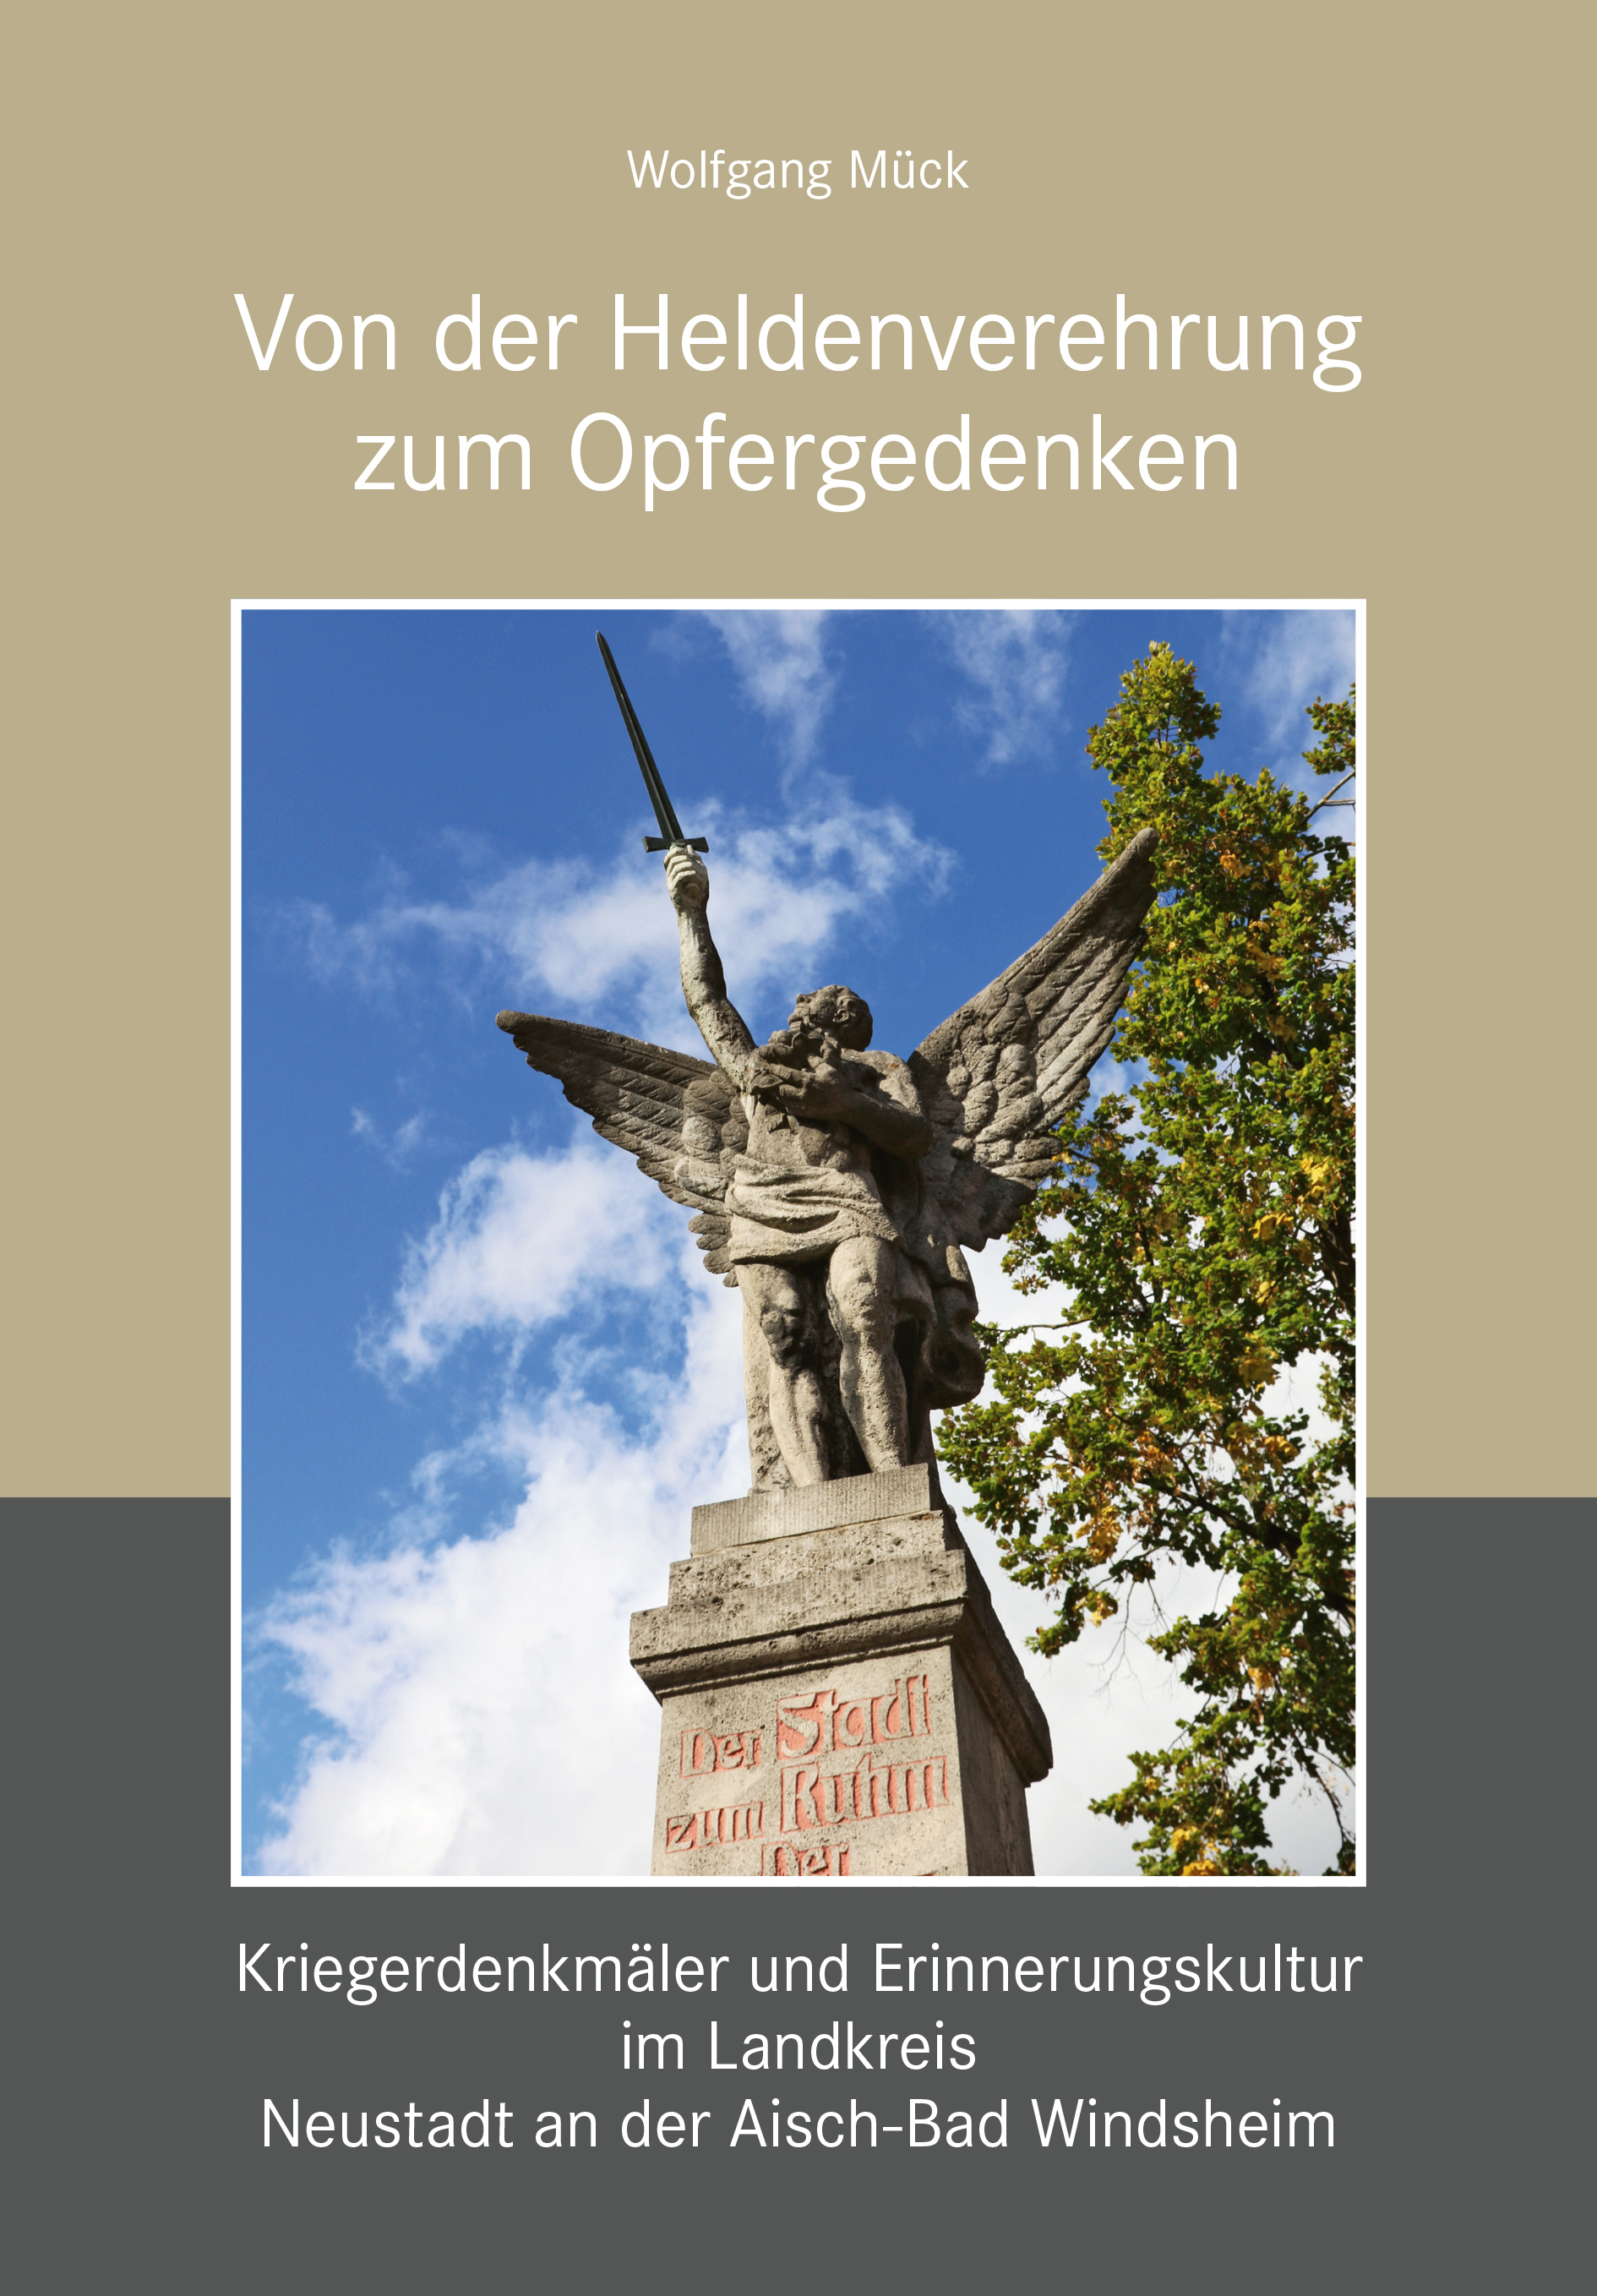 Mück Wolfgang - Von der Heldenverehrung zum Opfergedenken. Kriegerdenkmäler im Landkreis Neustadt an der Aisch-Bad Windsheim